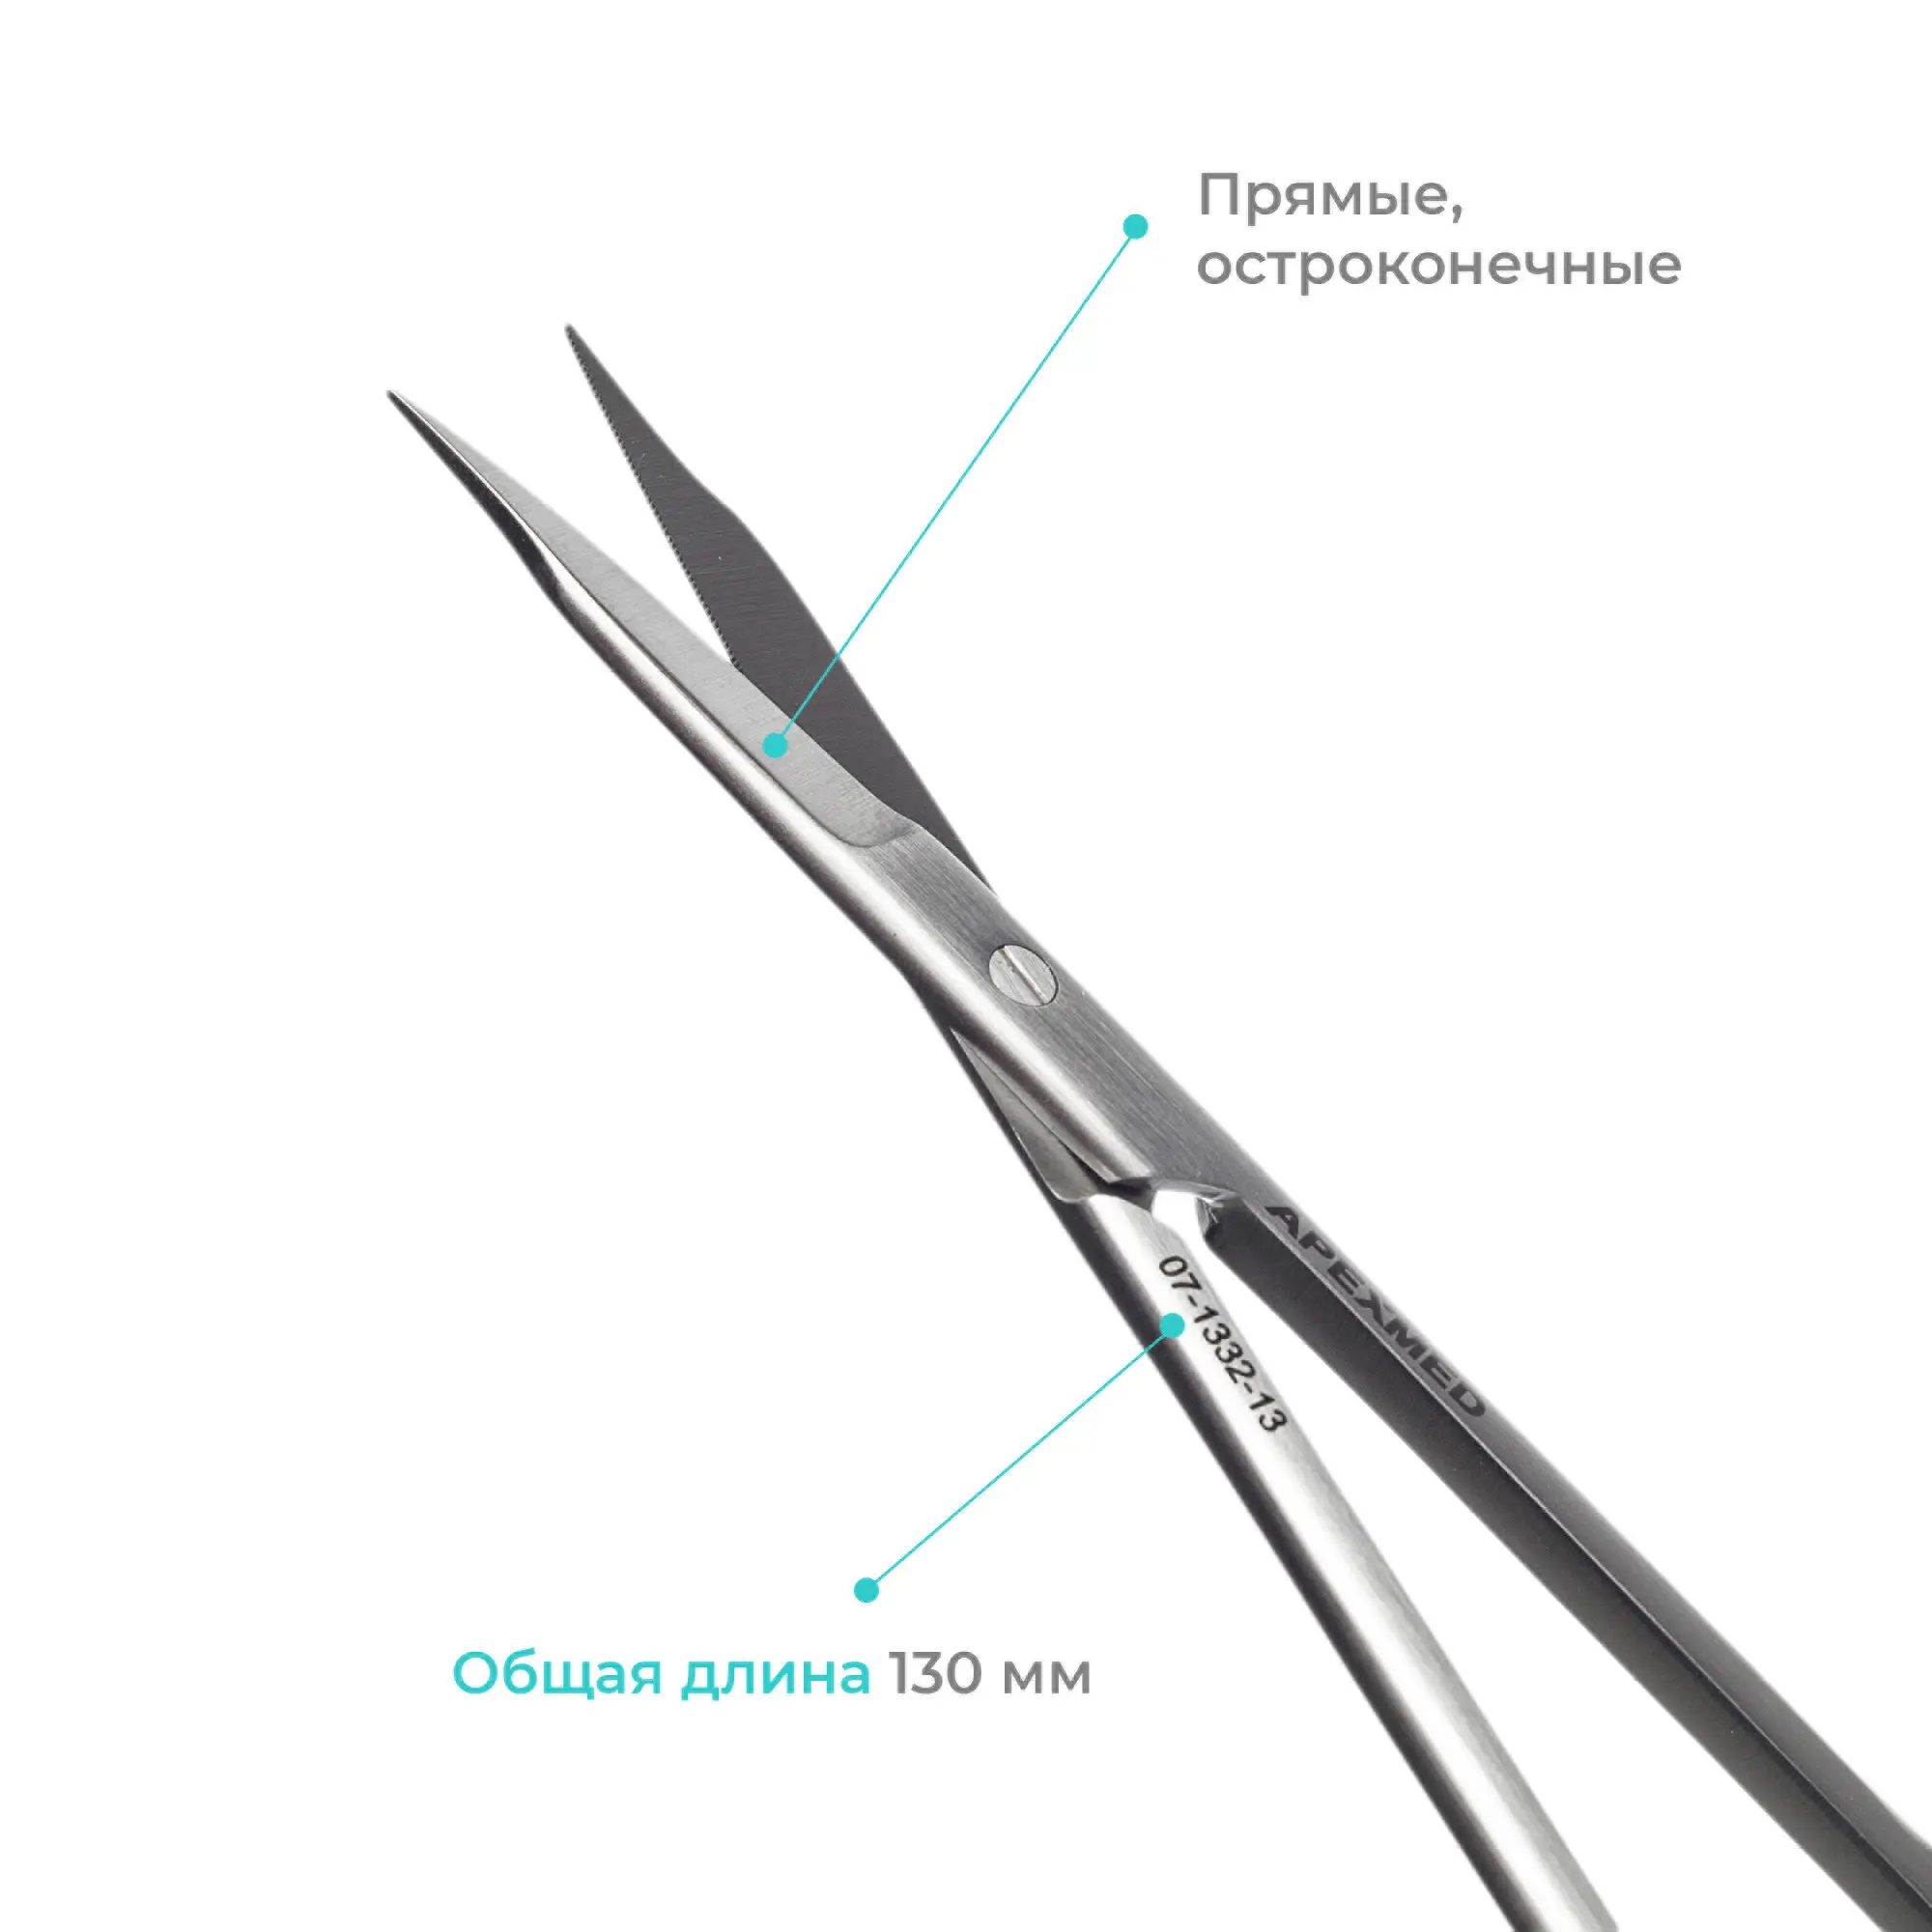 Ножницы хирургические Apexmed One Touch (Ван Тач), прямые, остроконечные, 130 мм, стоматологические, дентальные